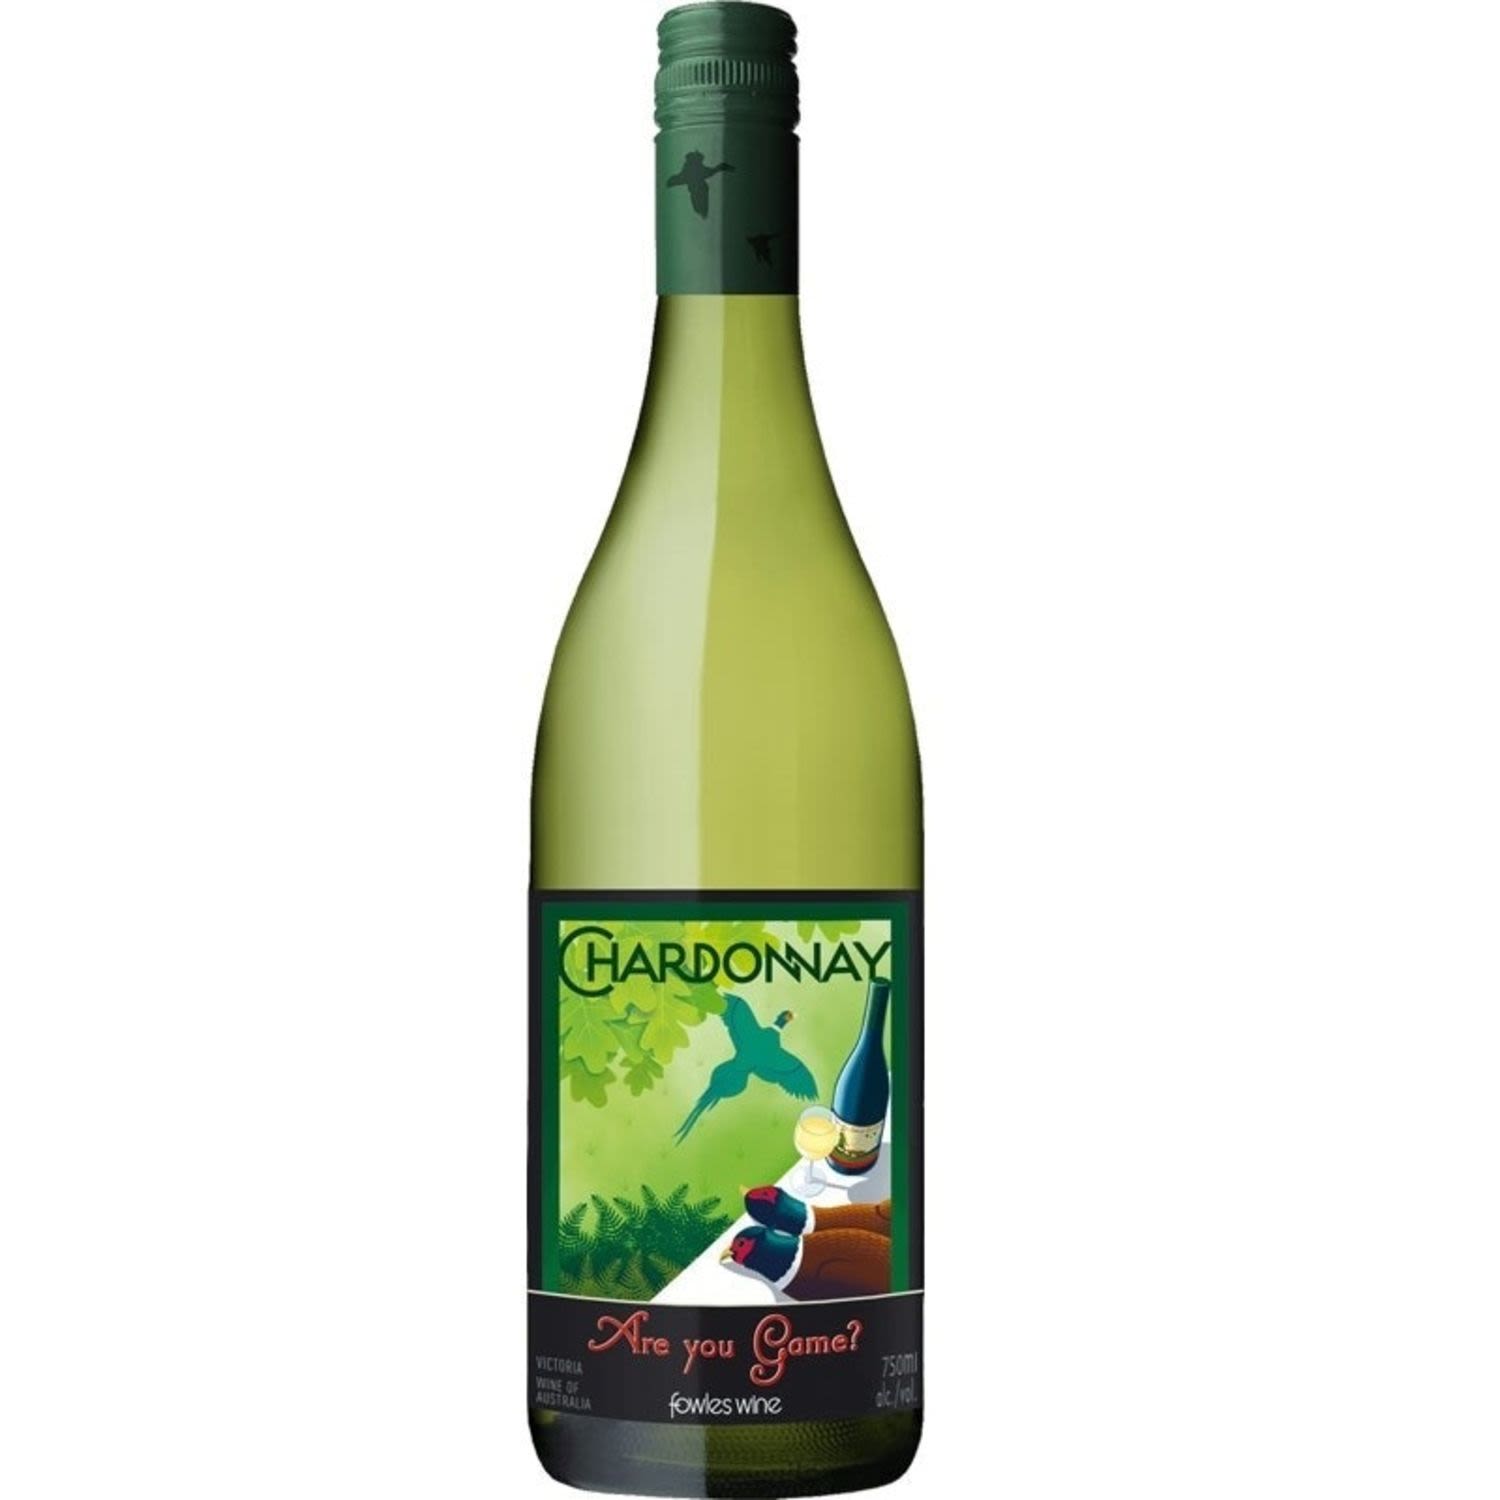 Fowles Wine Are You Game? Chardonnay<br /> <br />Alcohol Volume: 13.50%<br /><br />Pack Format: Bottle<br /><br />Standard Drinks: 8</br /><br />Pack Type: Bottle<br /><br />Country of Origin: Australia<br /><br />Region: Strathbogie Ranges<br /><br />Vintage: '2016<br />